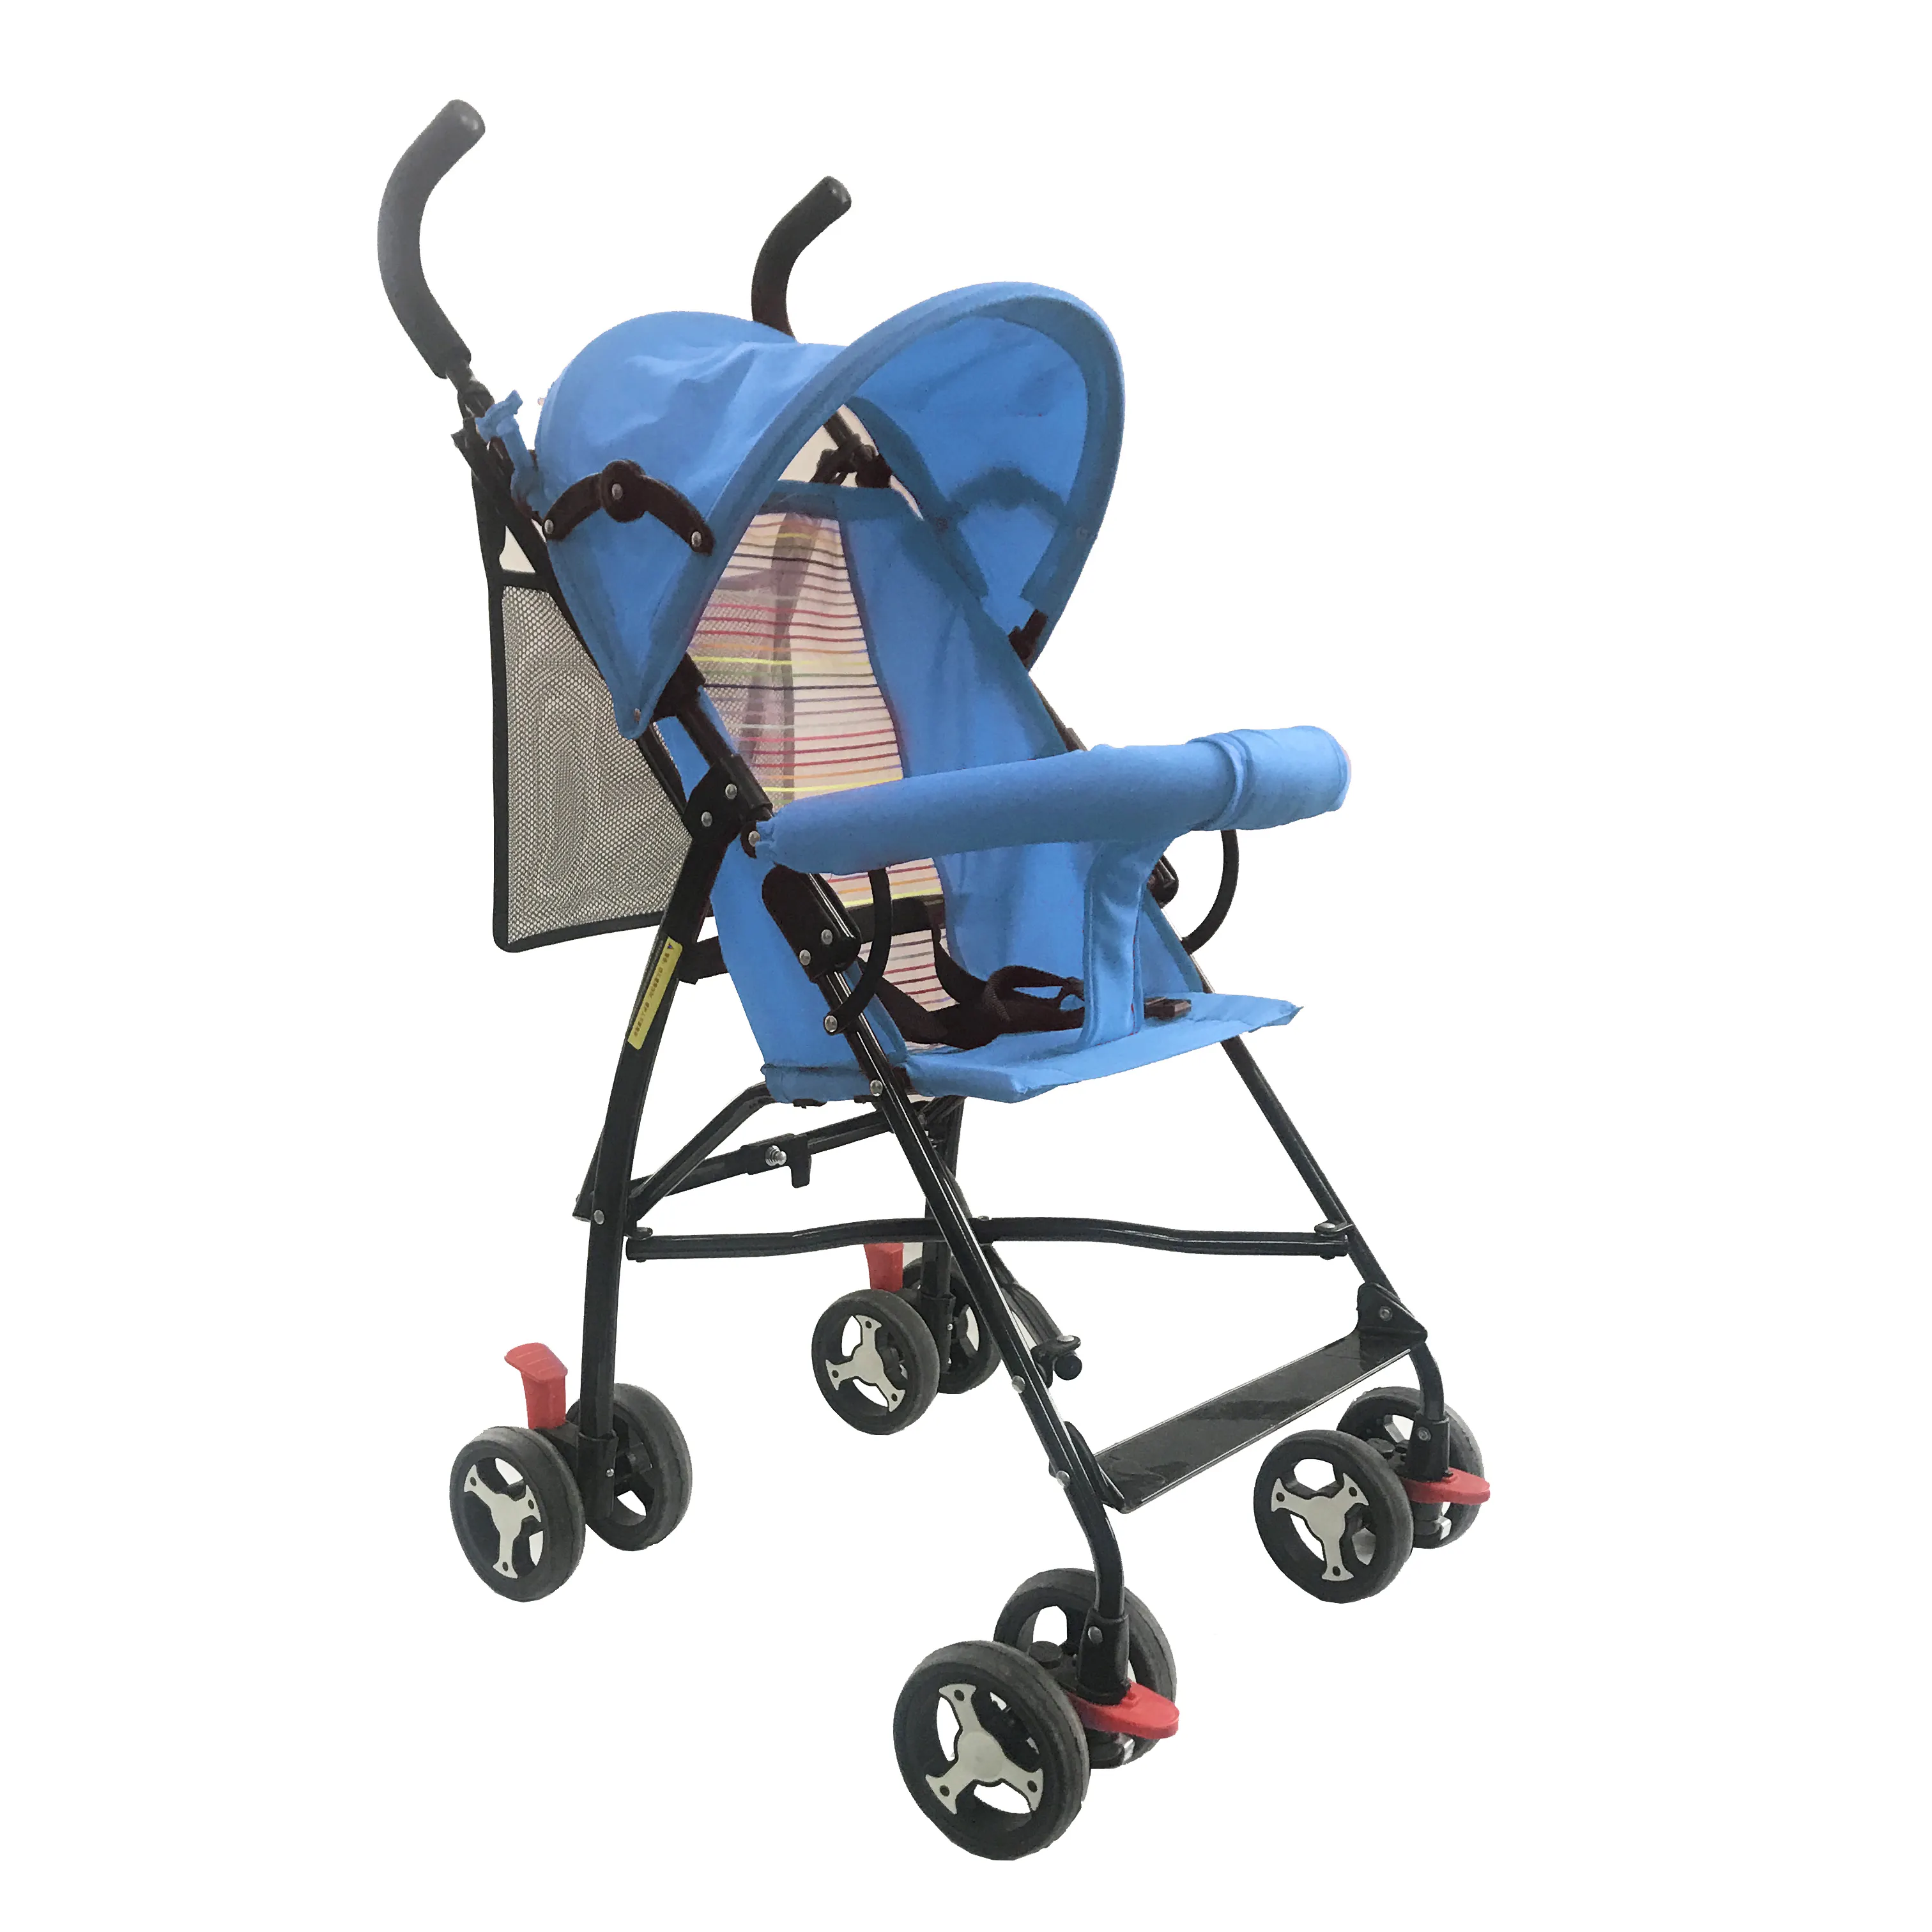 Ucuz fiyat ile yüksek kalite OEM marka bebek arabası taşıması kolay